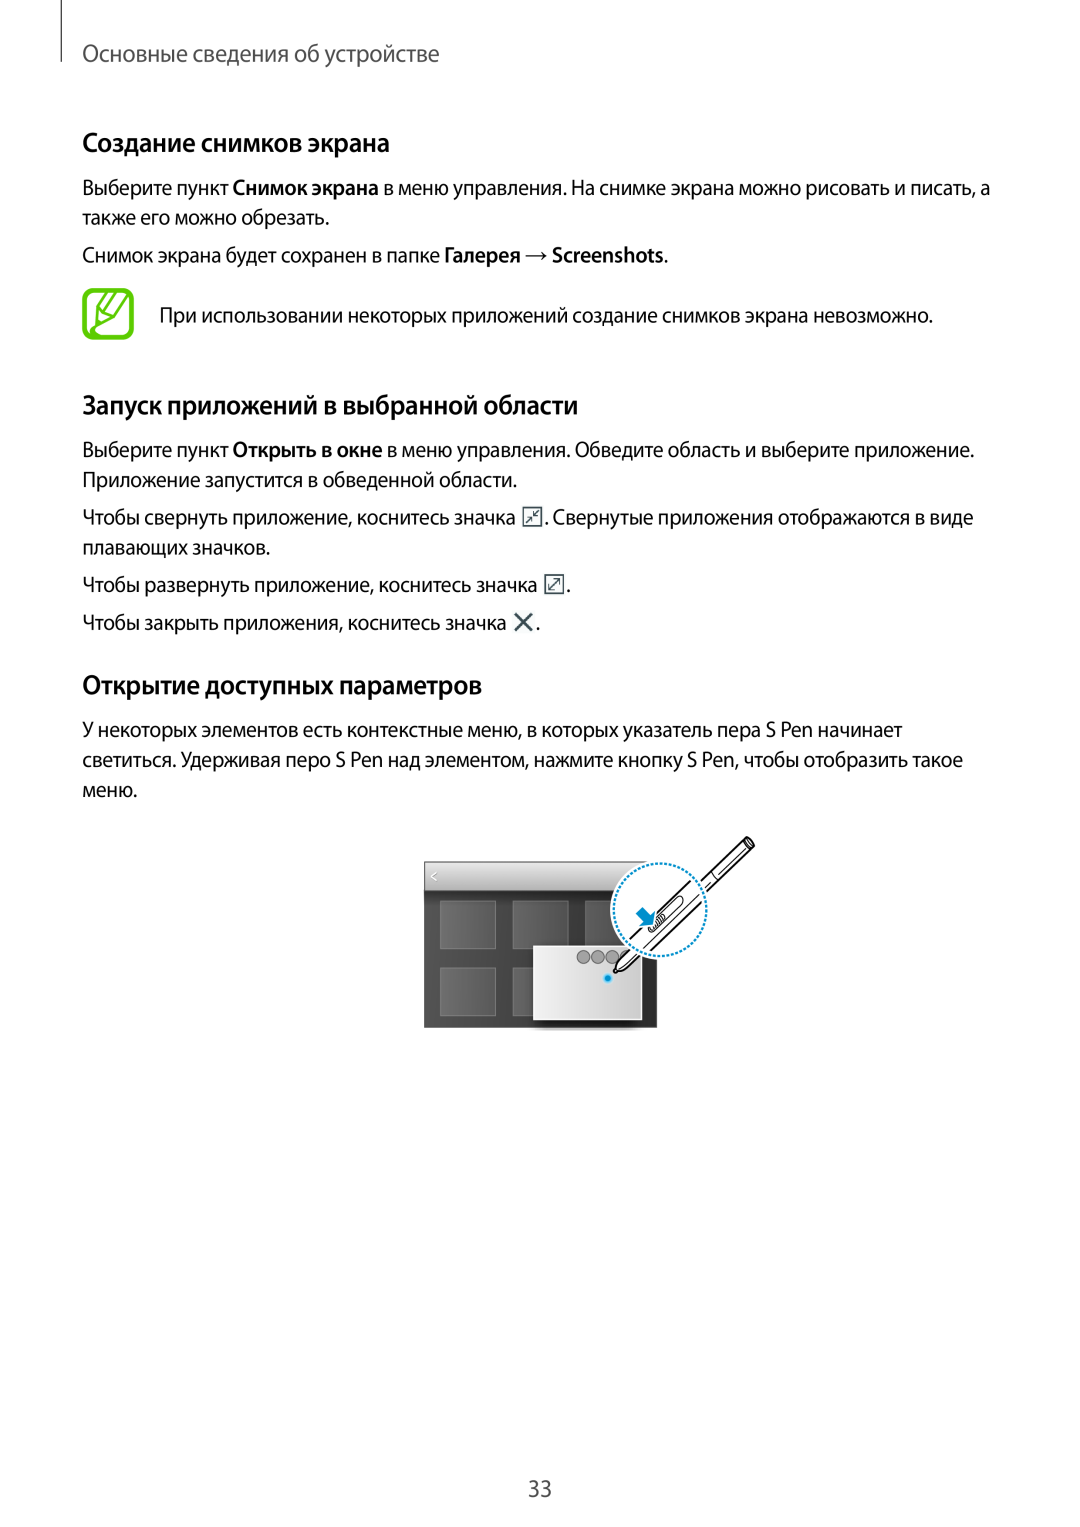 Samsung SM-P9000ZWASEB manual Создание снимков экрана, Запуск приложений в выбранной области, Открытие доступных параметров 